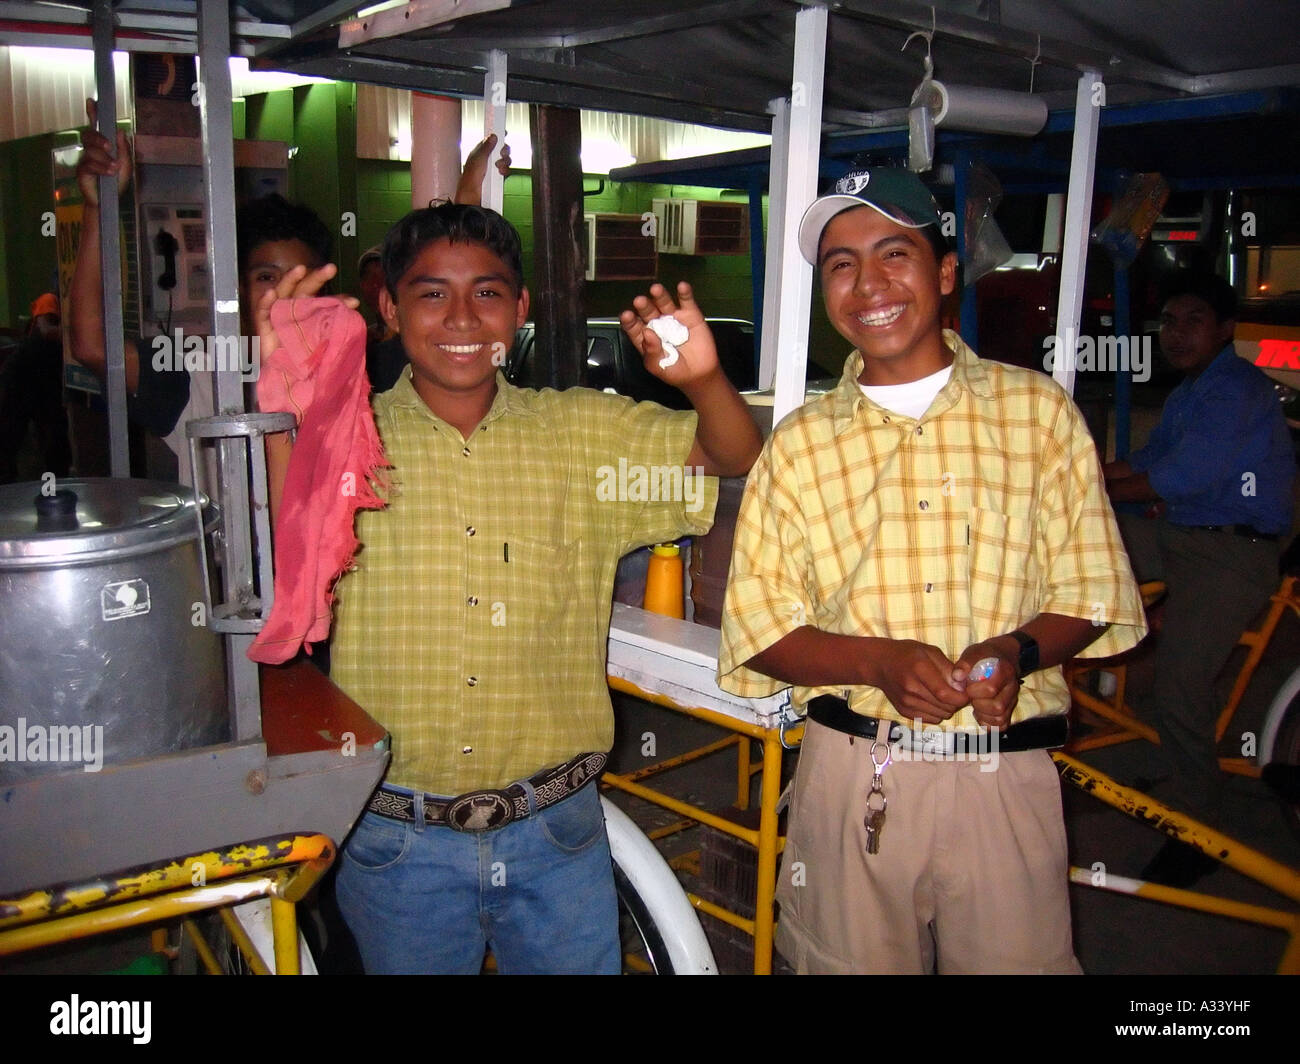 Les jeunes mexicains dans la rue, Palenque, Chiapas, Mexique Banque D'Images